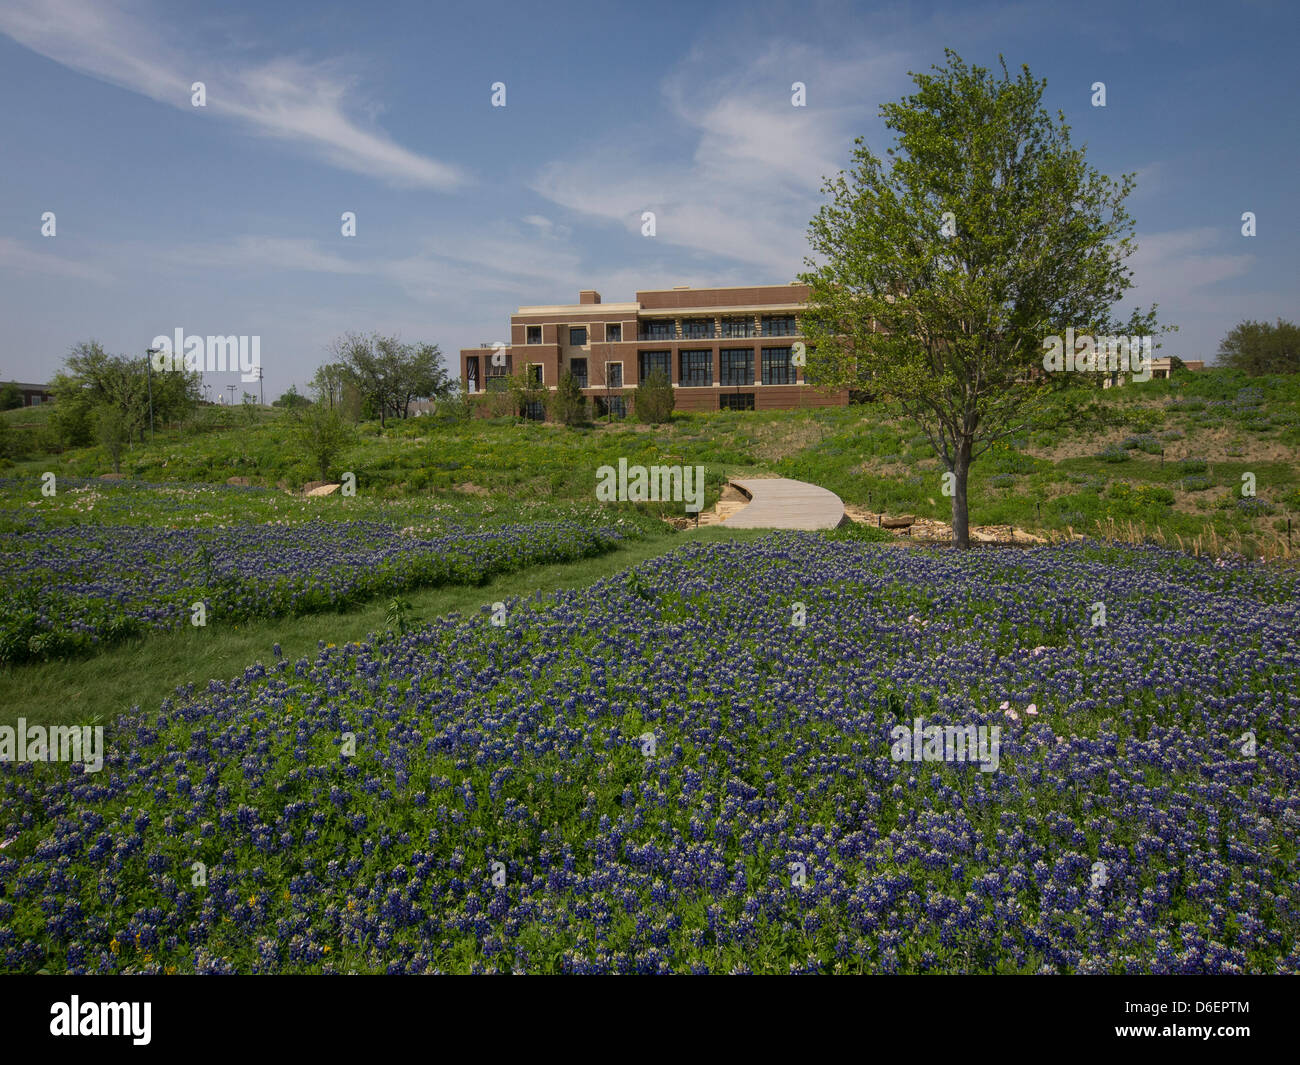 The George W Bush Presidential Library and Museum auf dem Campus der SMU ein Feld von einheimischen Texas Wildblumen blühen. Vor allem die Texas Bluebonnet, Zustandblume von Texas. Stockfoto